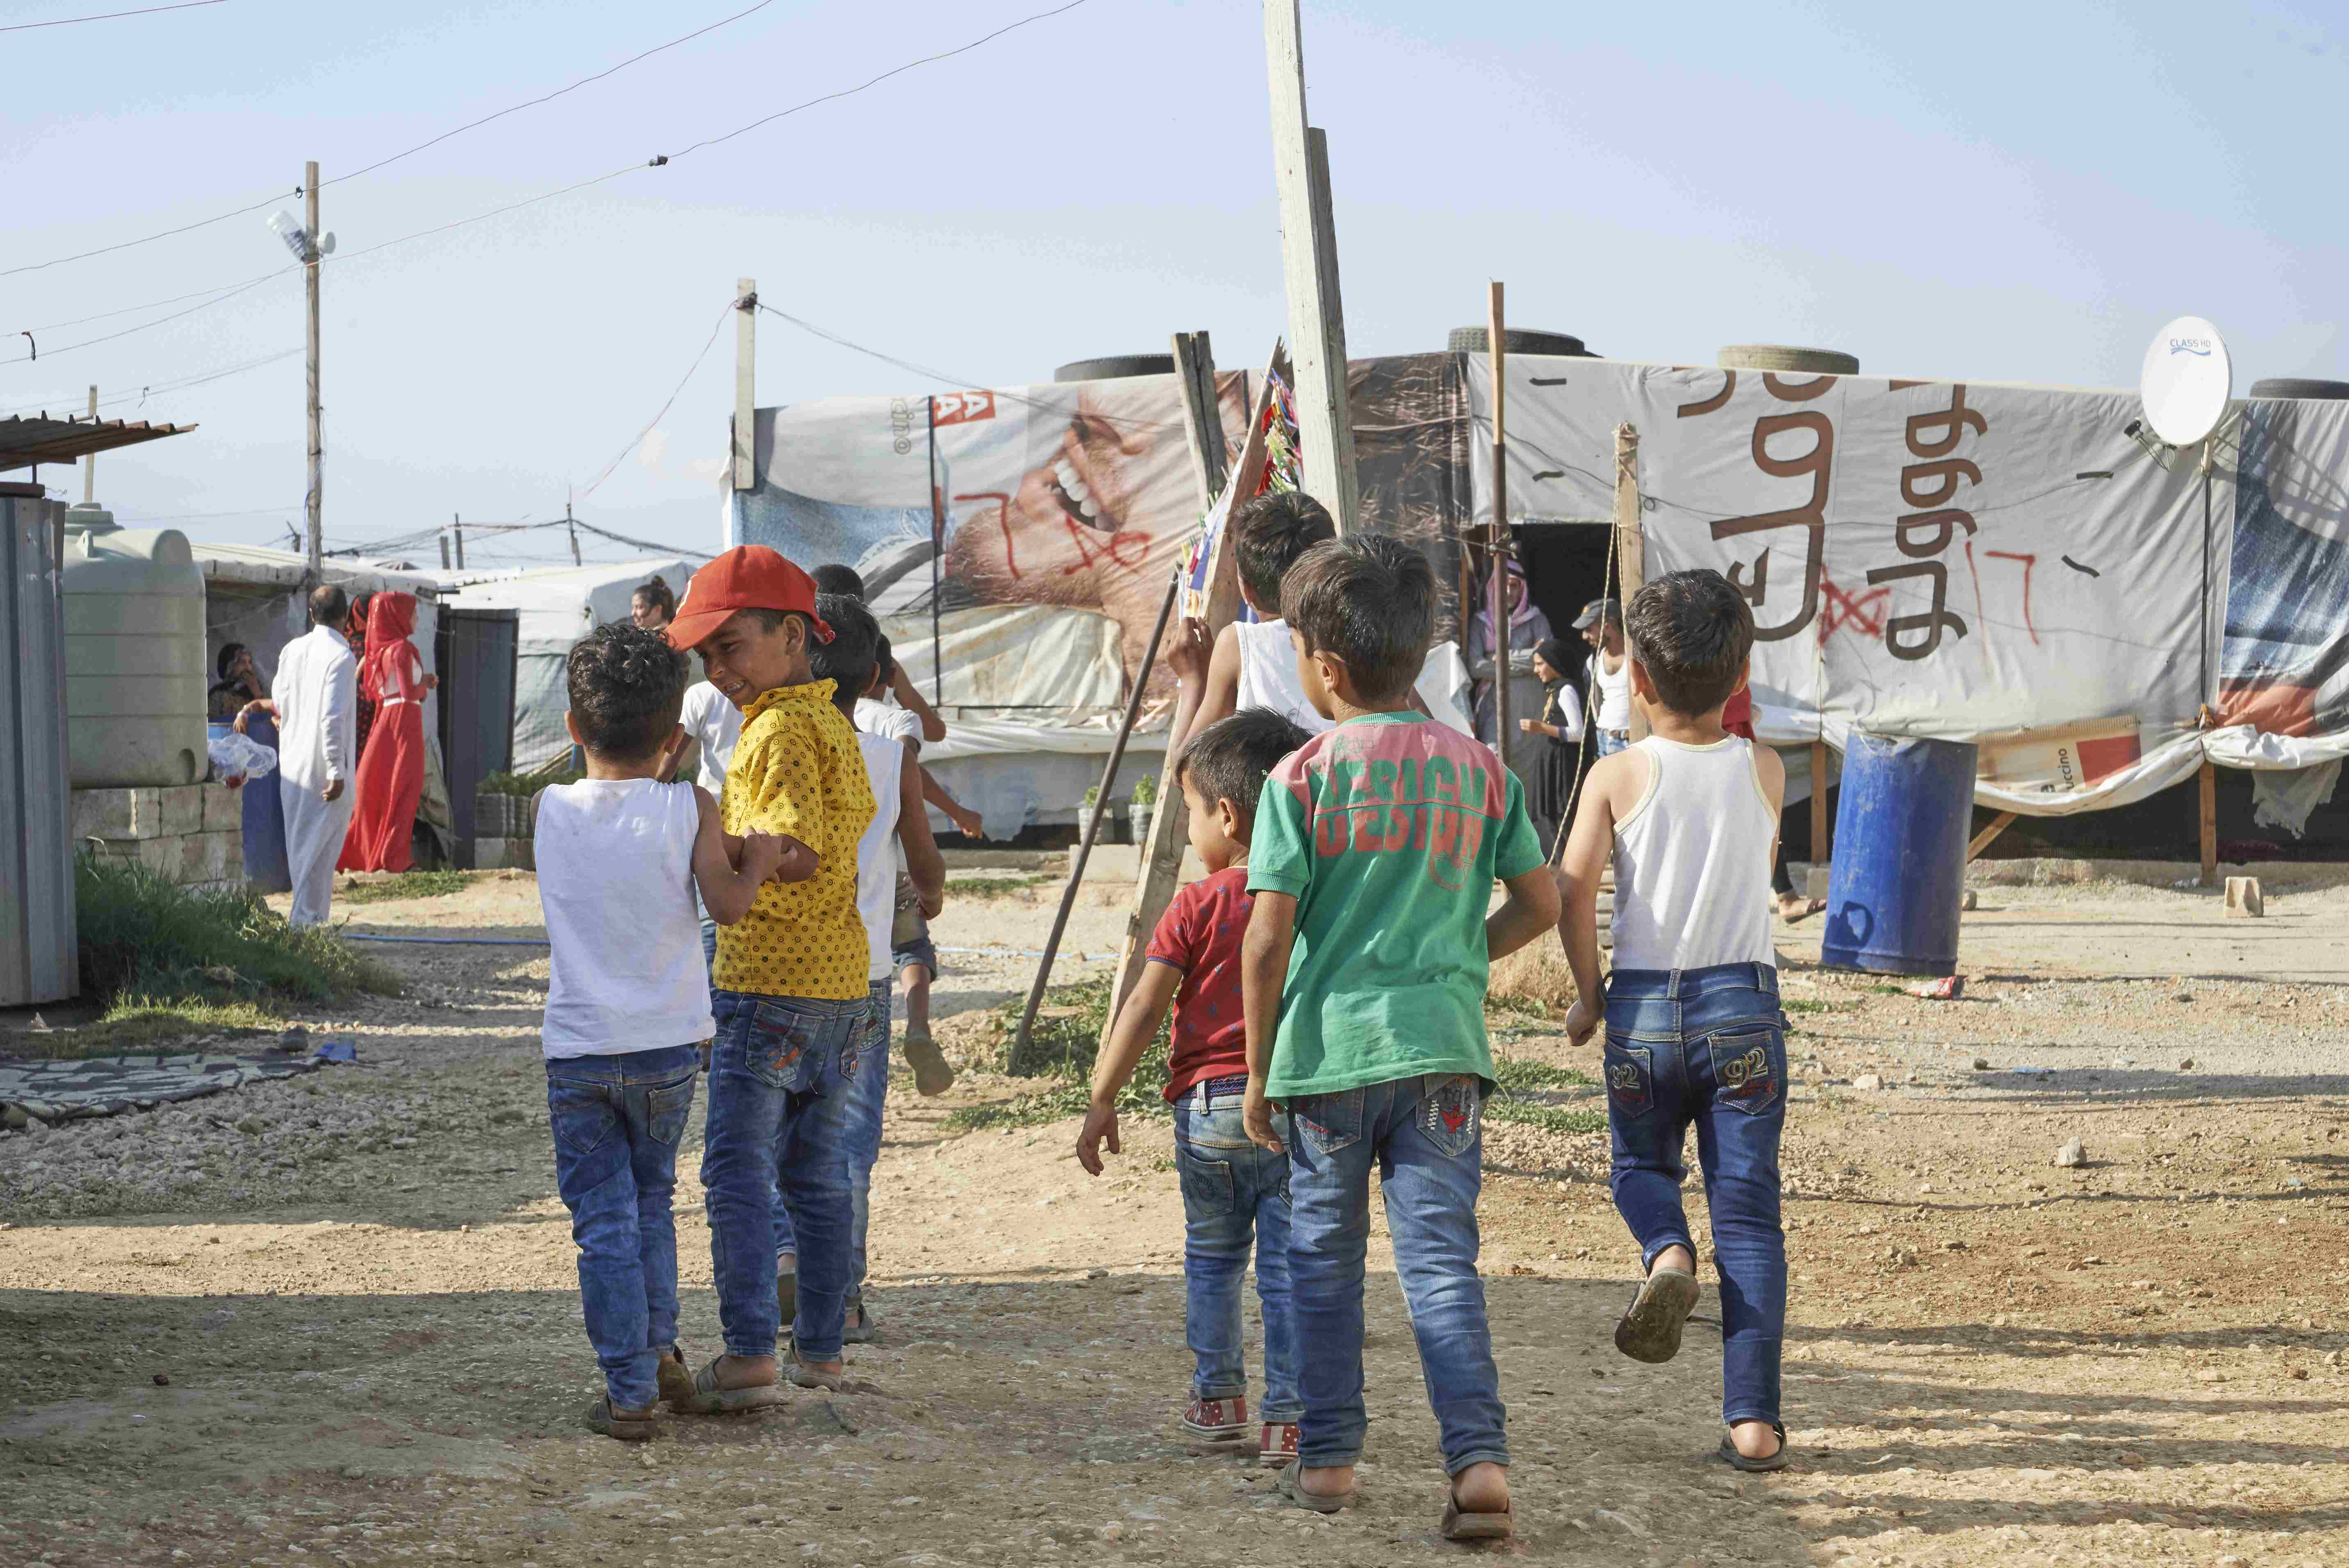 Kinder in einem Lager für Geflüchtete im Libanon. (Quelle: Ulrich Gernhardt)